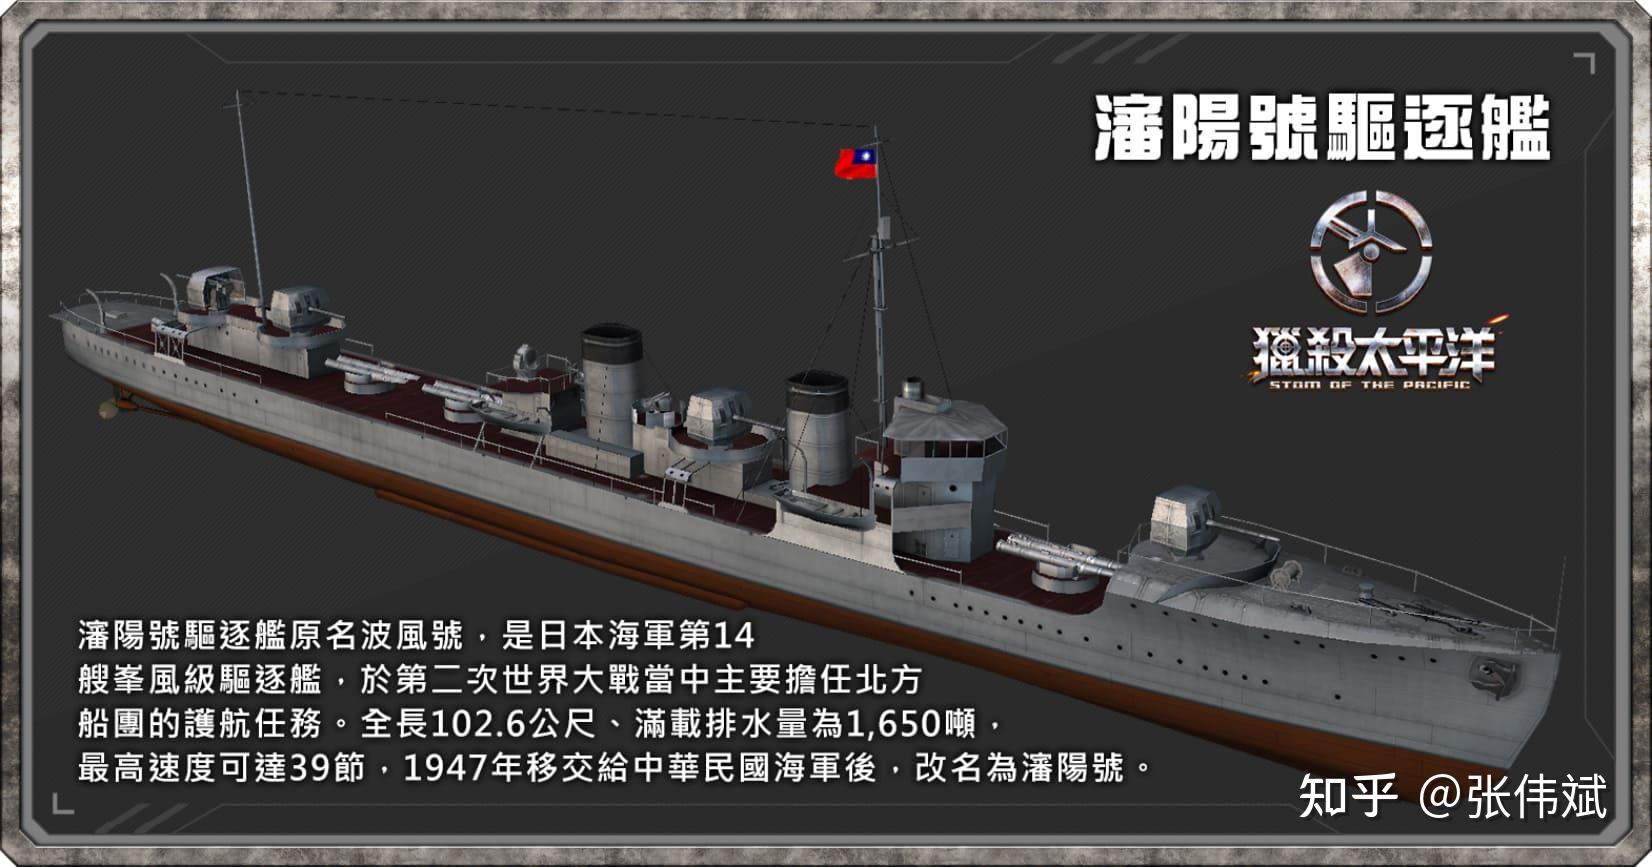 二战后,日本赔偿了什么给中国?最值钱的可能就是这些船